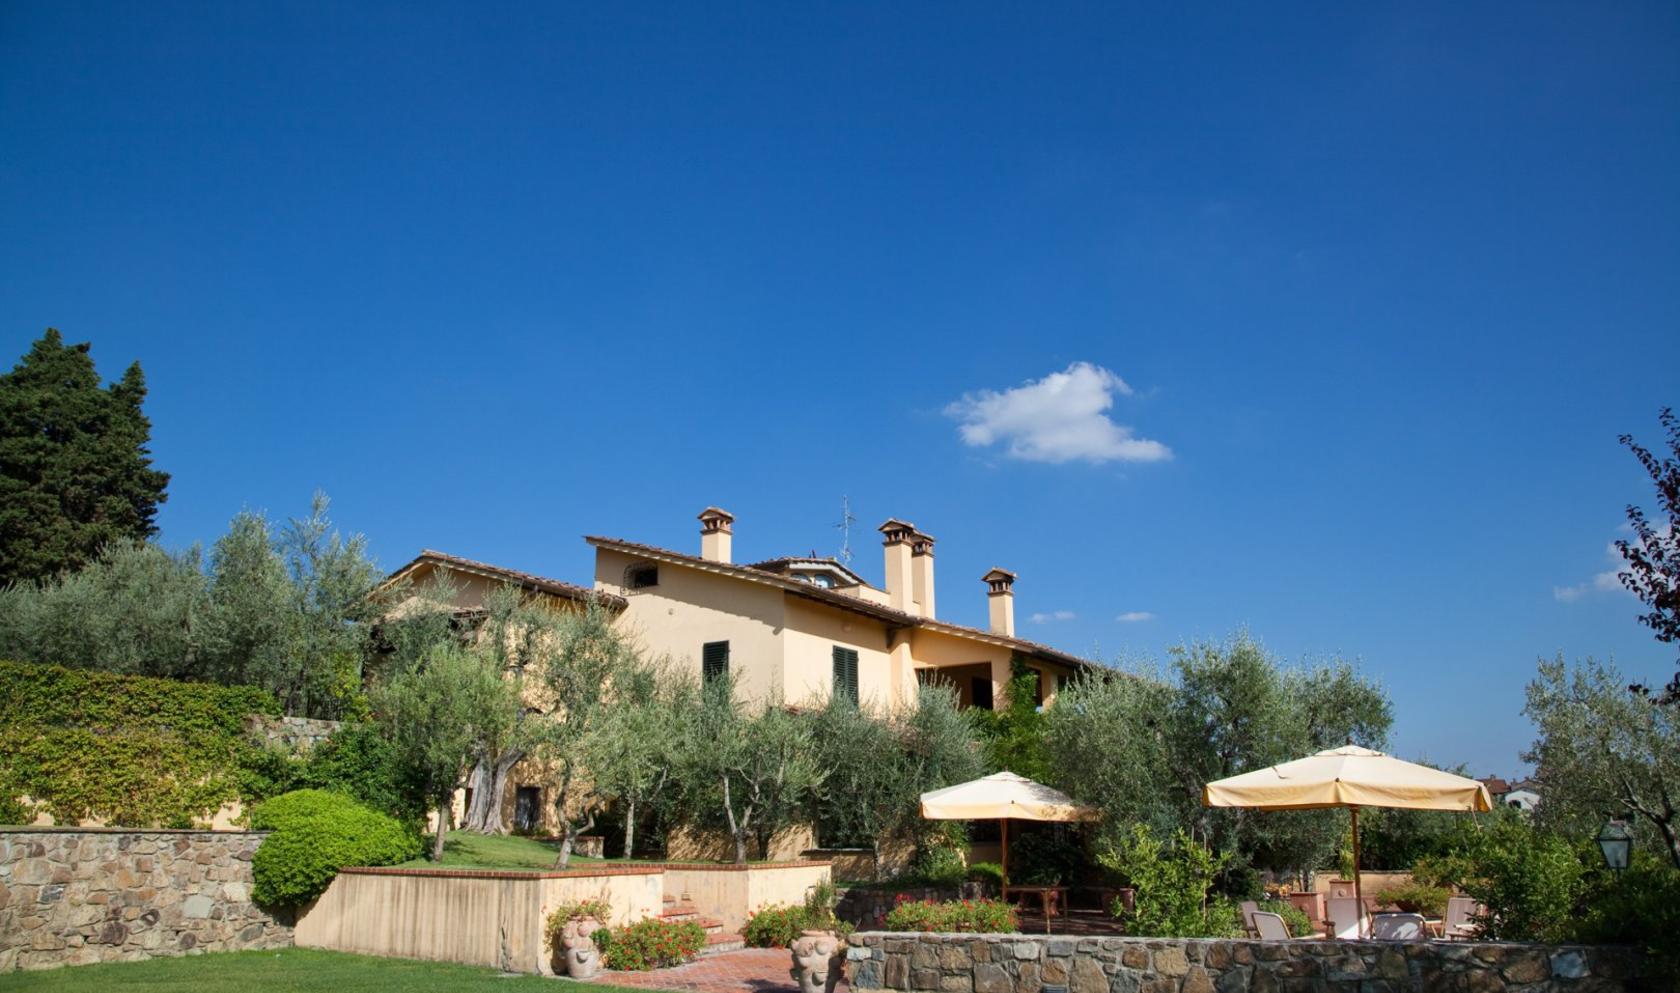 Toscana Immobiliare - Firenze, prestigiosa proprietà in vendita con villa padronale, piscina, giardini, oliveto, annessi ed appartamenti;